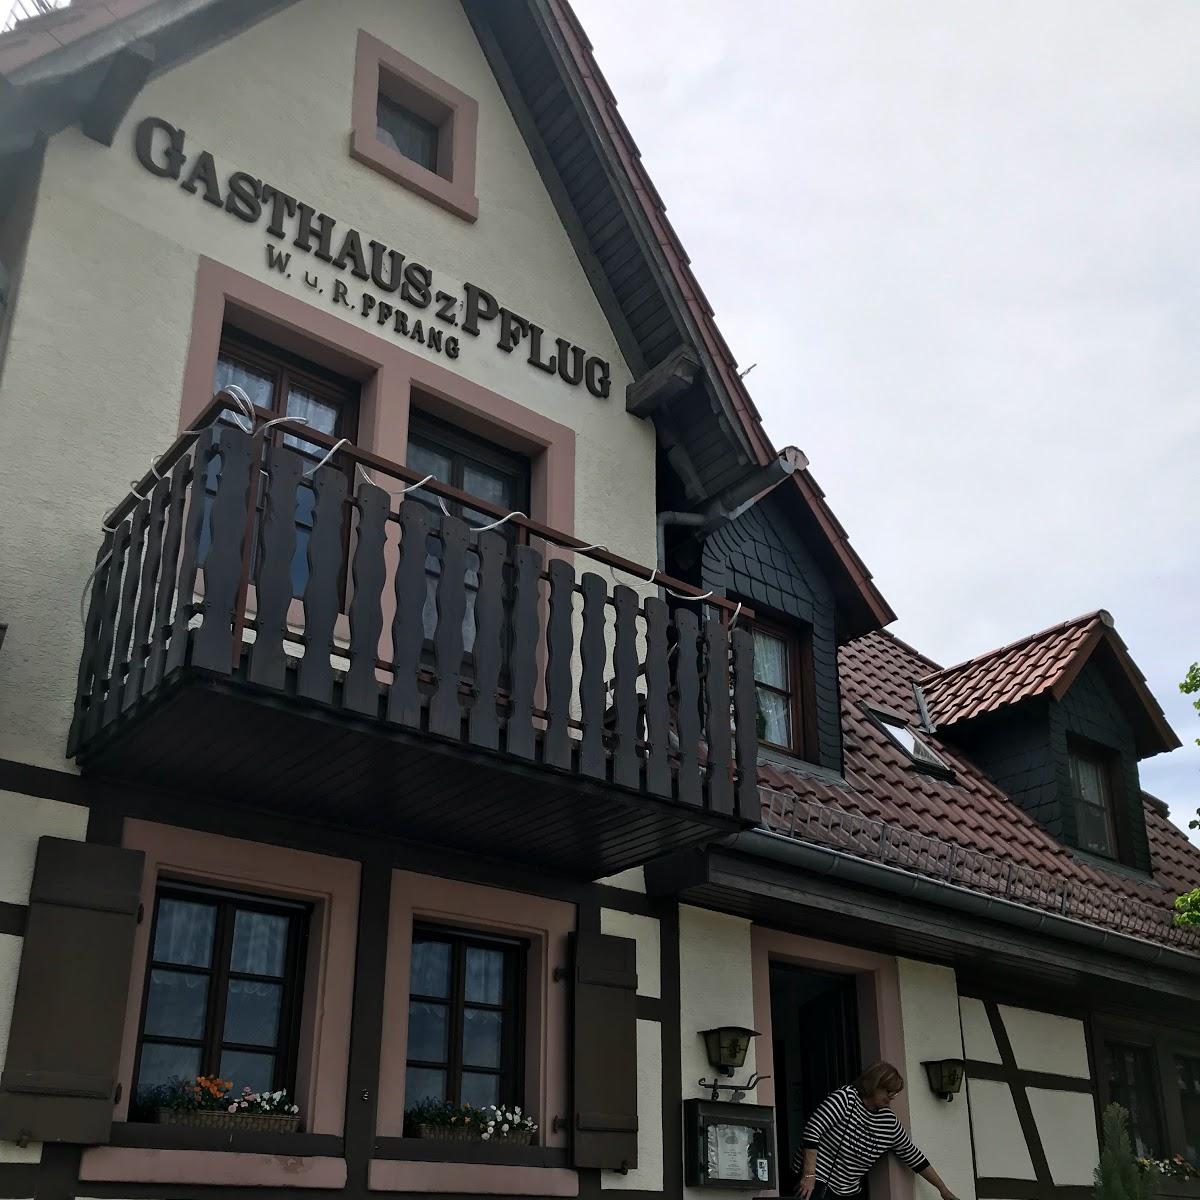 Restaurant "Gasthaus zum Pflug" in  Weinheim